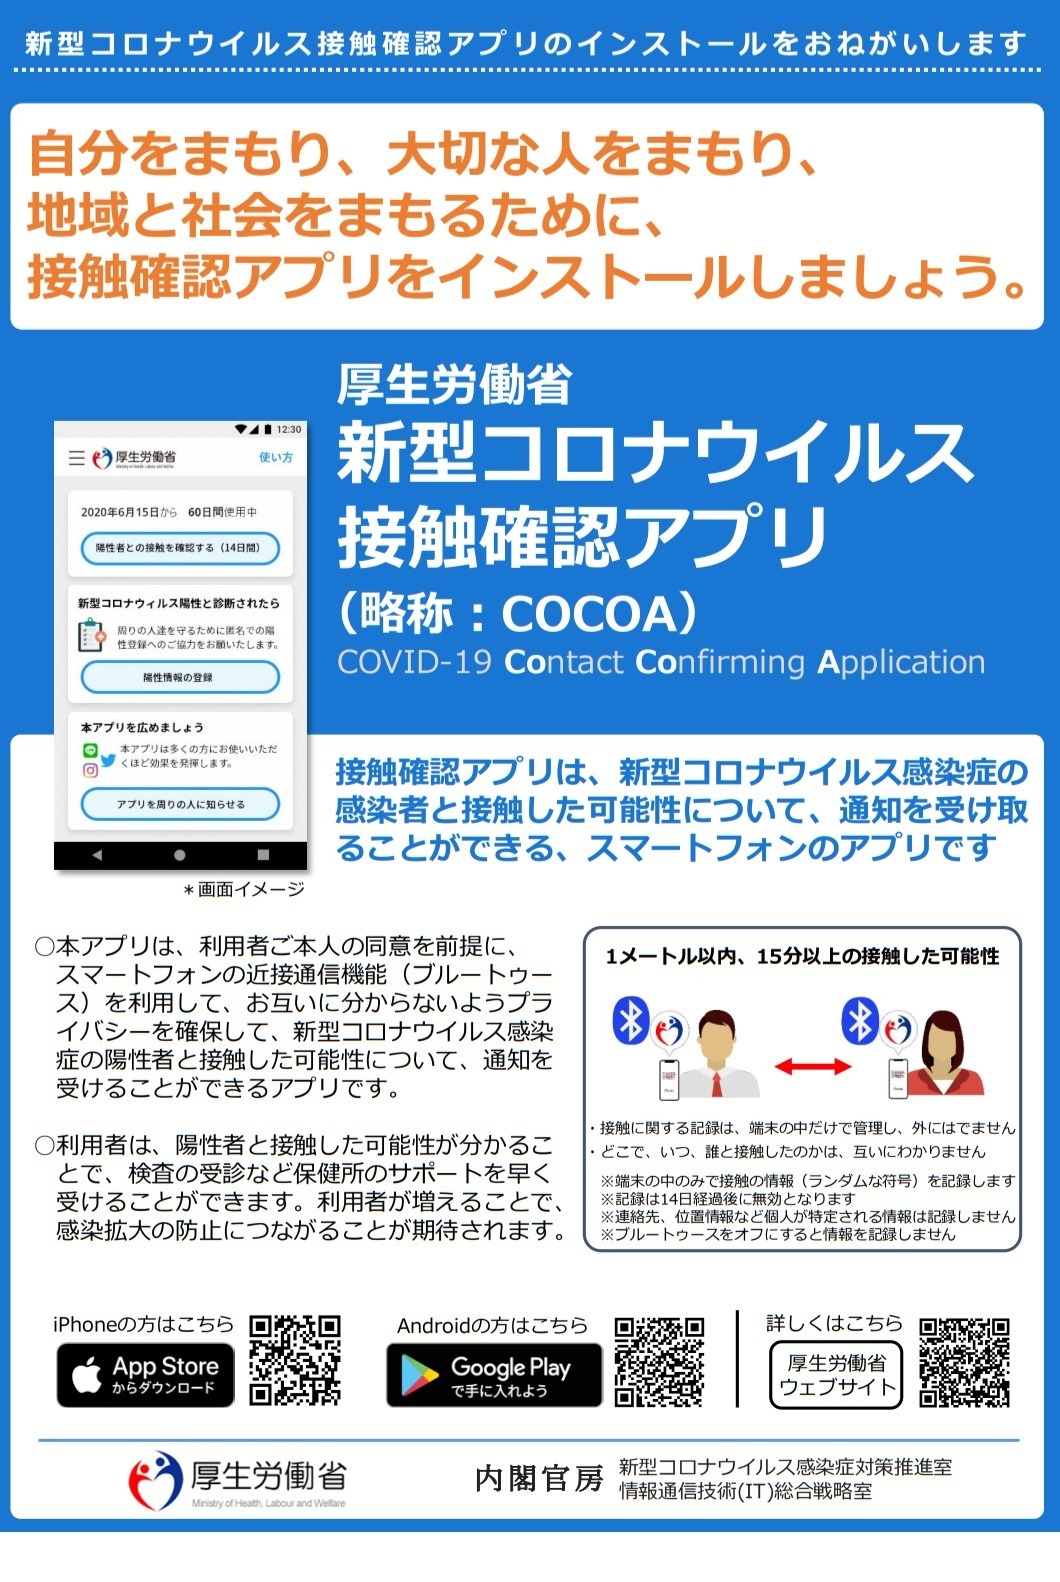 登録 数 者 アプリ 確認 接触 コロナ接触確認アプリ「COCOA」2000万ダウンロードを突破